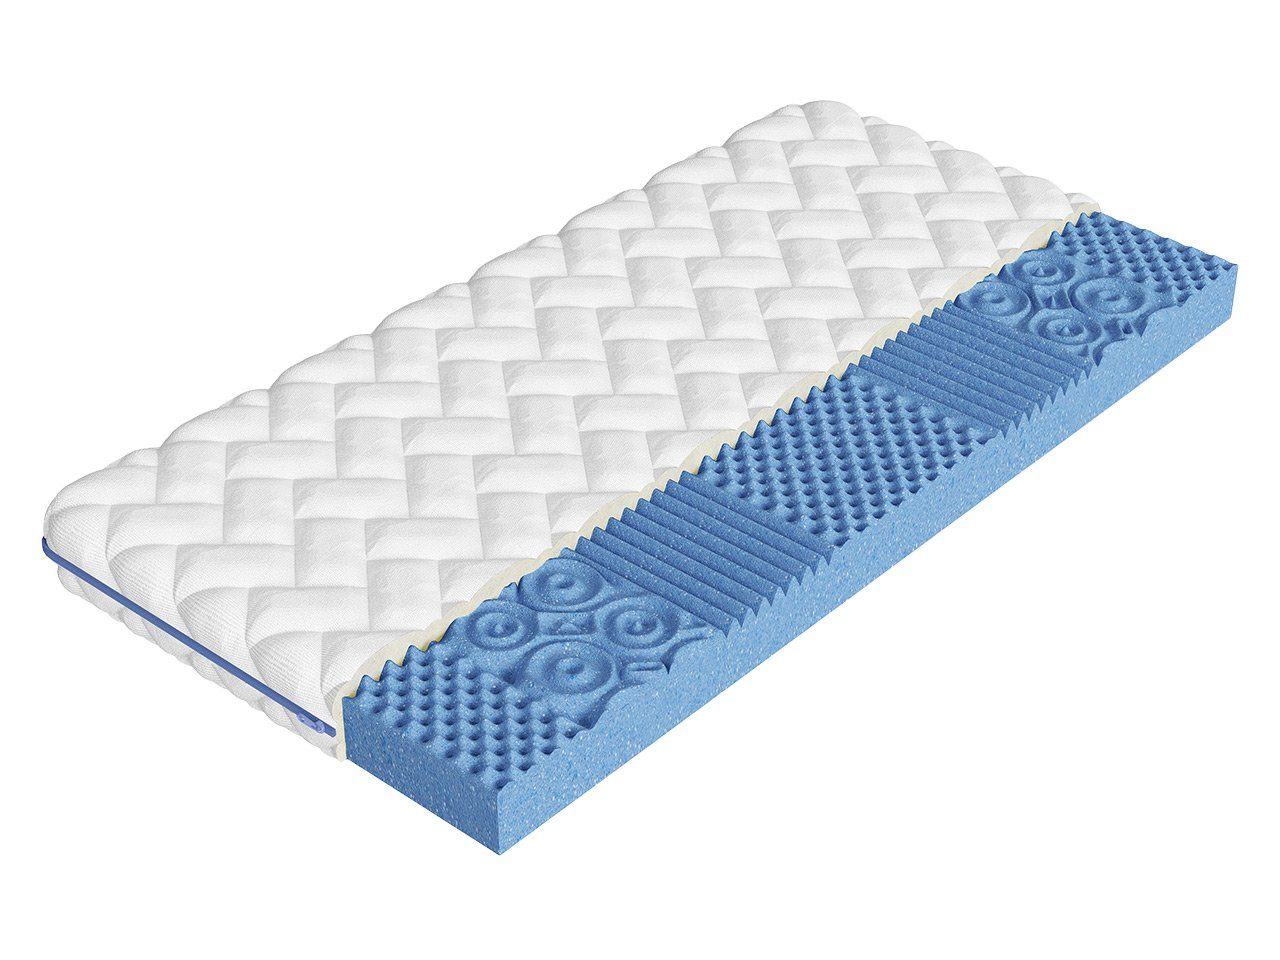 Komfortschaummatratze Blue, MIRJAN24, 12 cm hoch, (Massageschaumstoff), Bezug mit Reißverschluss, Antiallergische, Beidseitig, H3